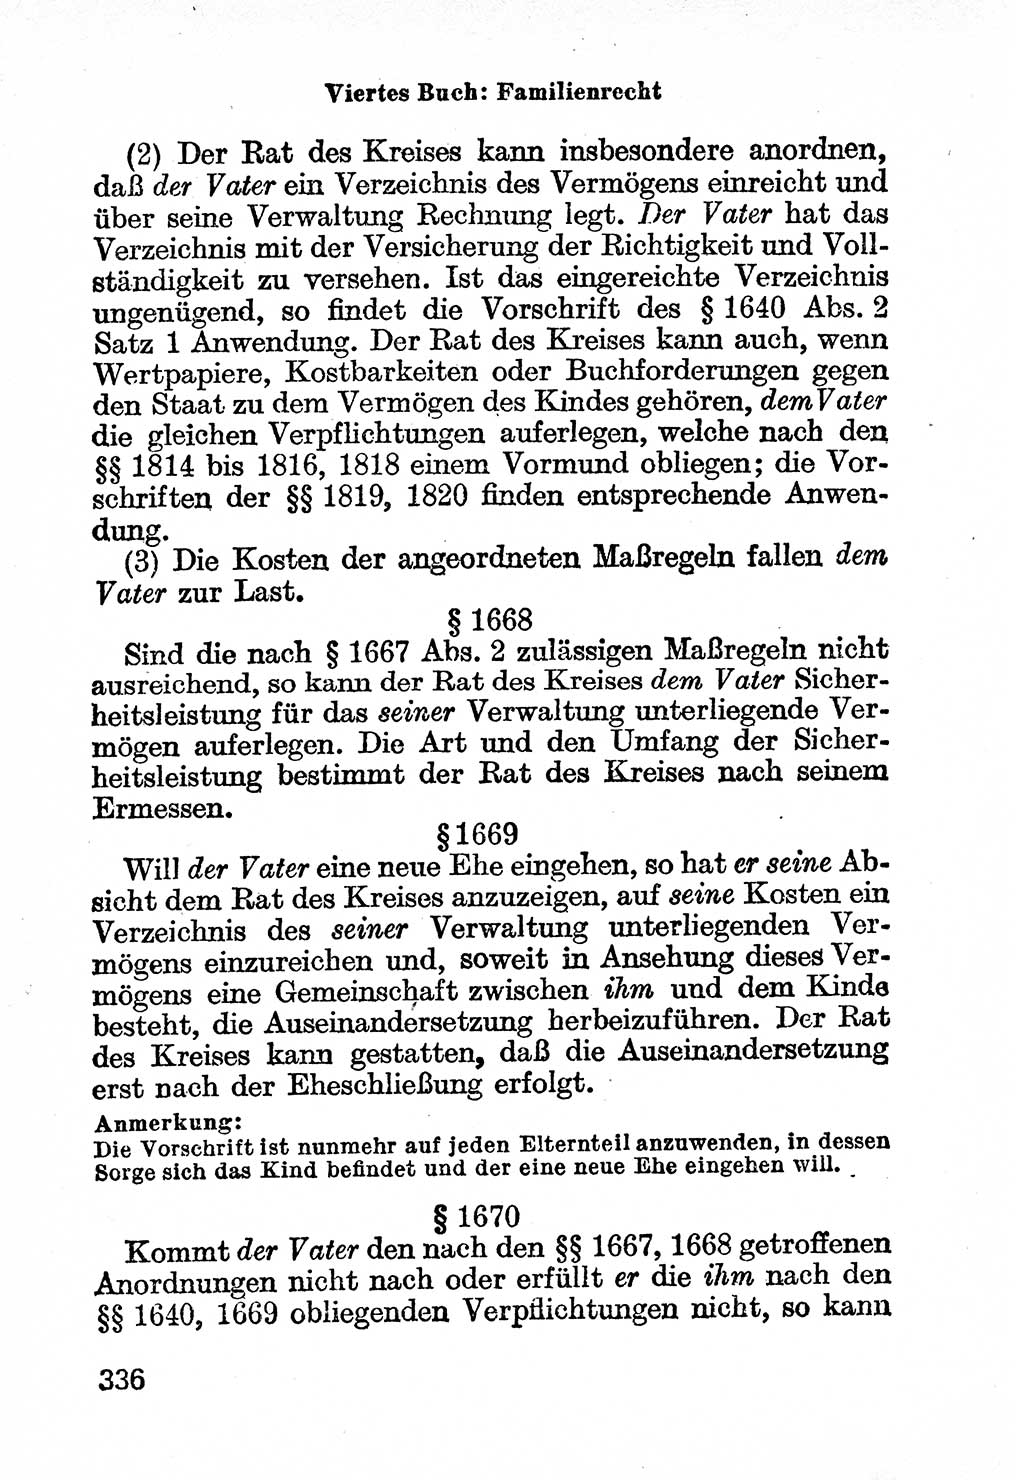 Bürgerliches Gesetzbuch (BGB) nebst wichtigen Nebengesetzen [Deutsche Demokratische Republik (DDR)] 1956, Seite 336 (BGB Nebenges. DDR 1956, S. 336)